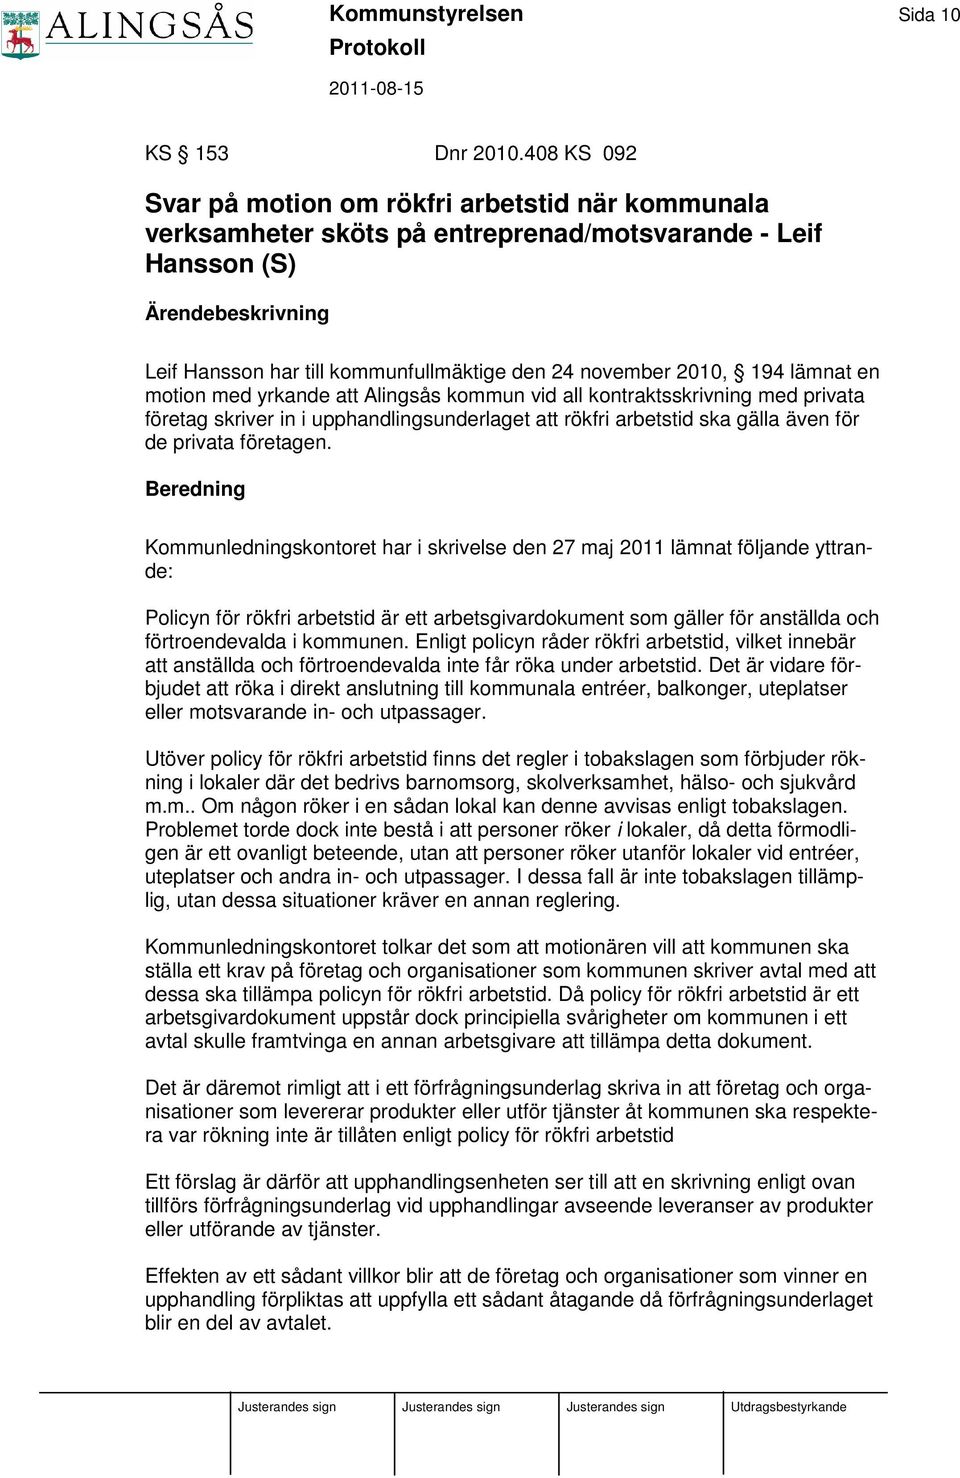 2010, 194 lämnat en motion med yrkande att Alingsås kommun vid all kontraktsskrivning med privata företag skriver in i upphandlingsunderlaget att rökfri arbetstid ska gälla även för de privata